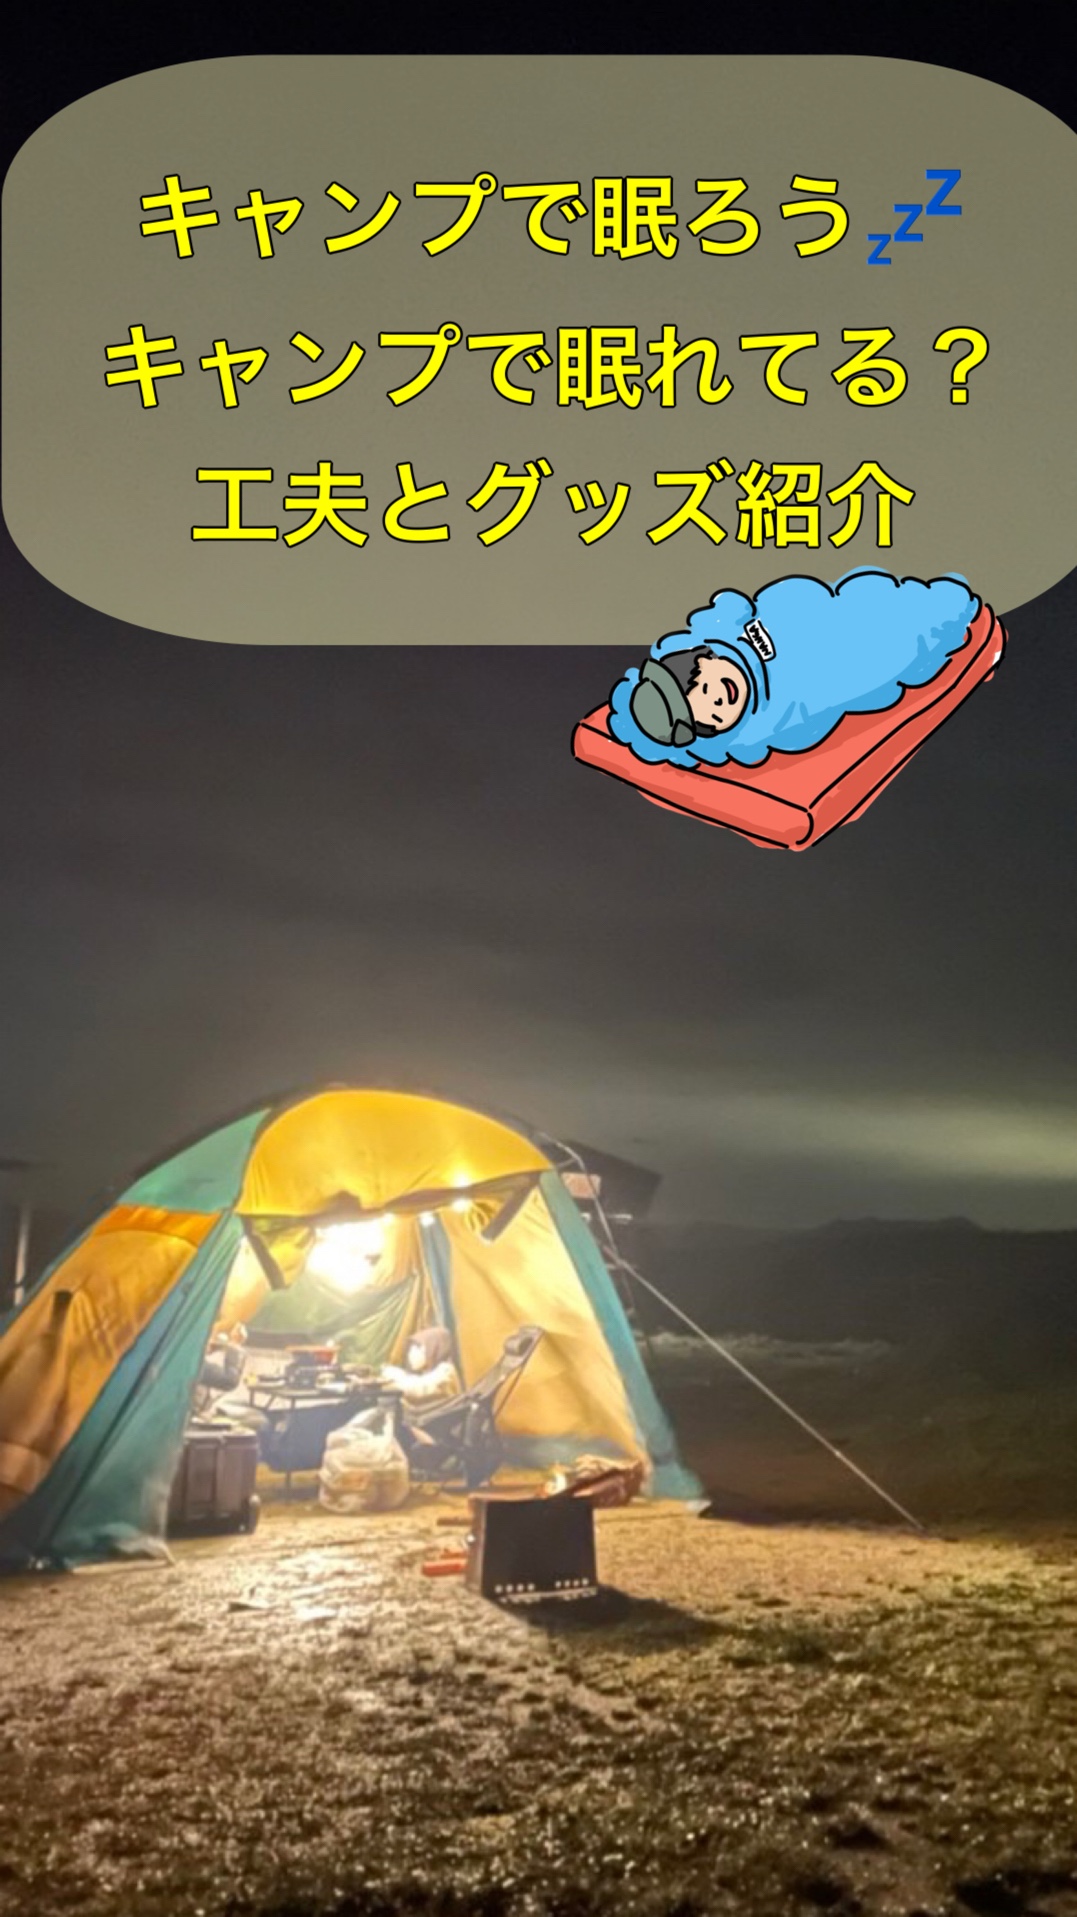 キャンプで眠ろう！キャンプでぐっすり眠れていますか？工夫と眠れるためのグッズ